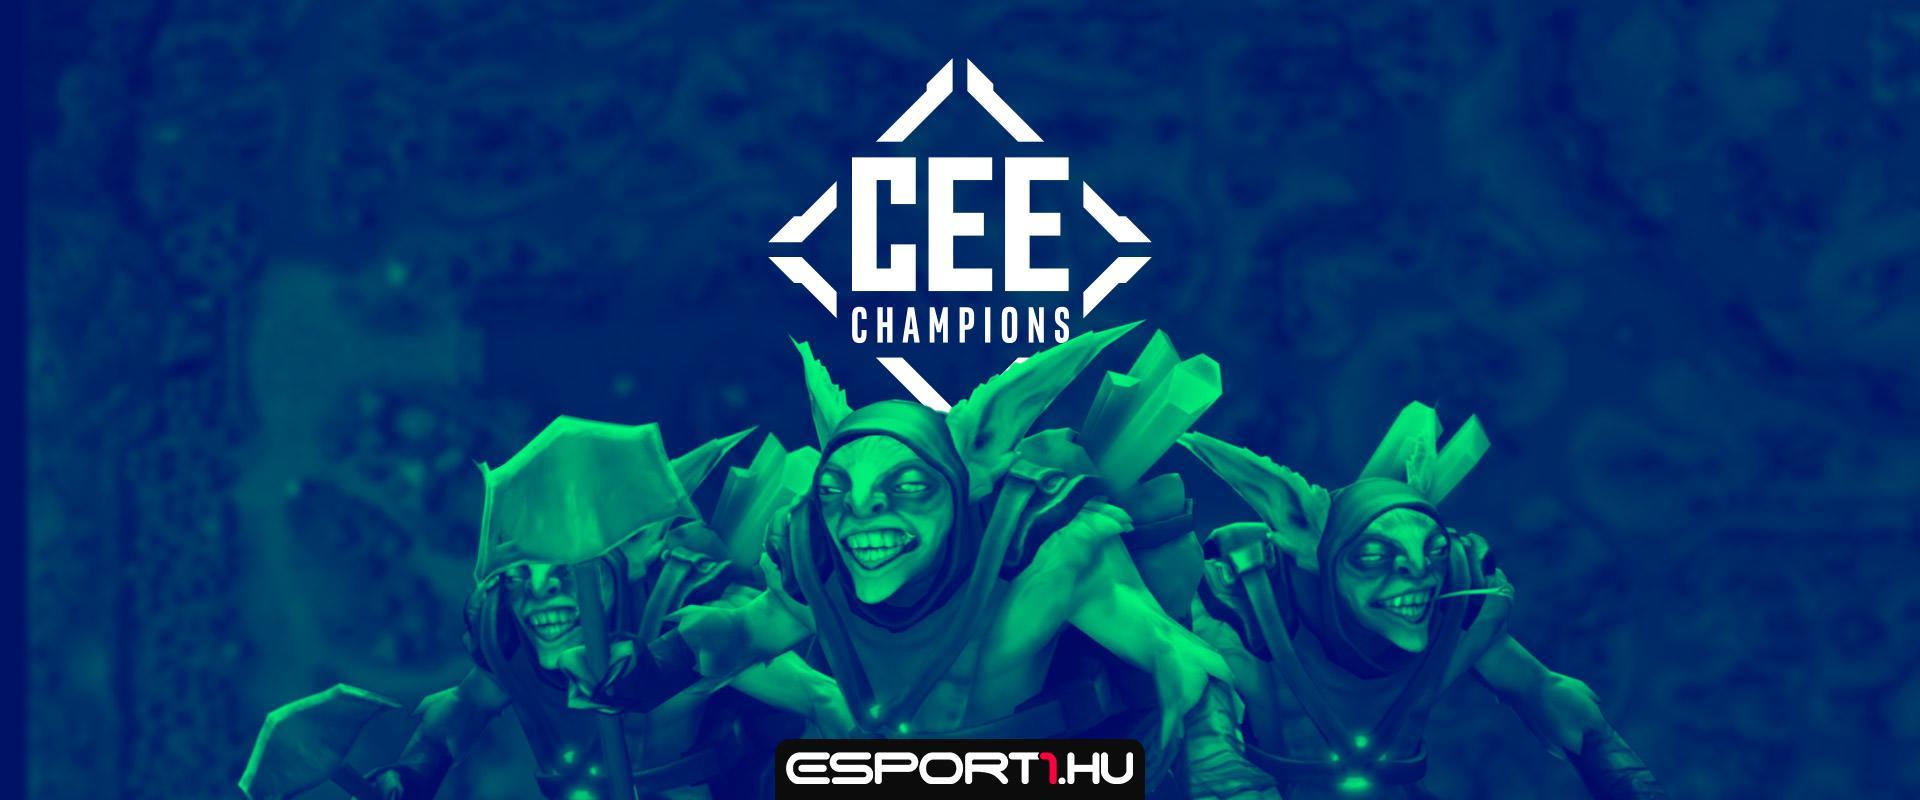 Egy utolsó hely még kiadó a CEE Champions Dota 2 versenyre!